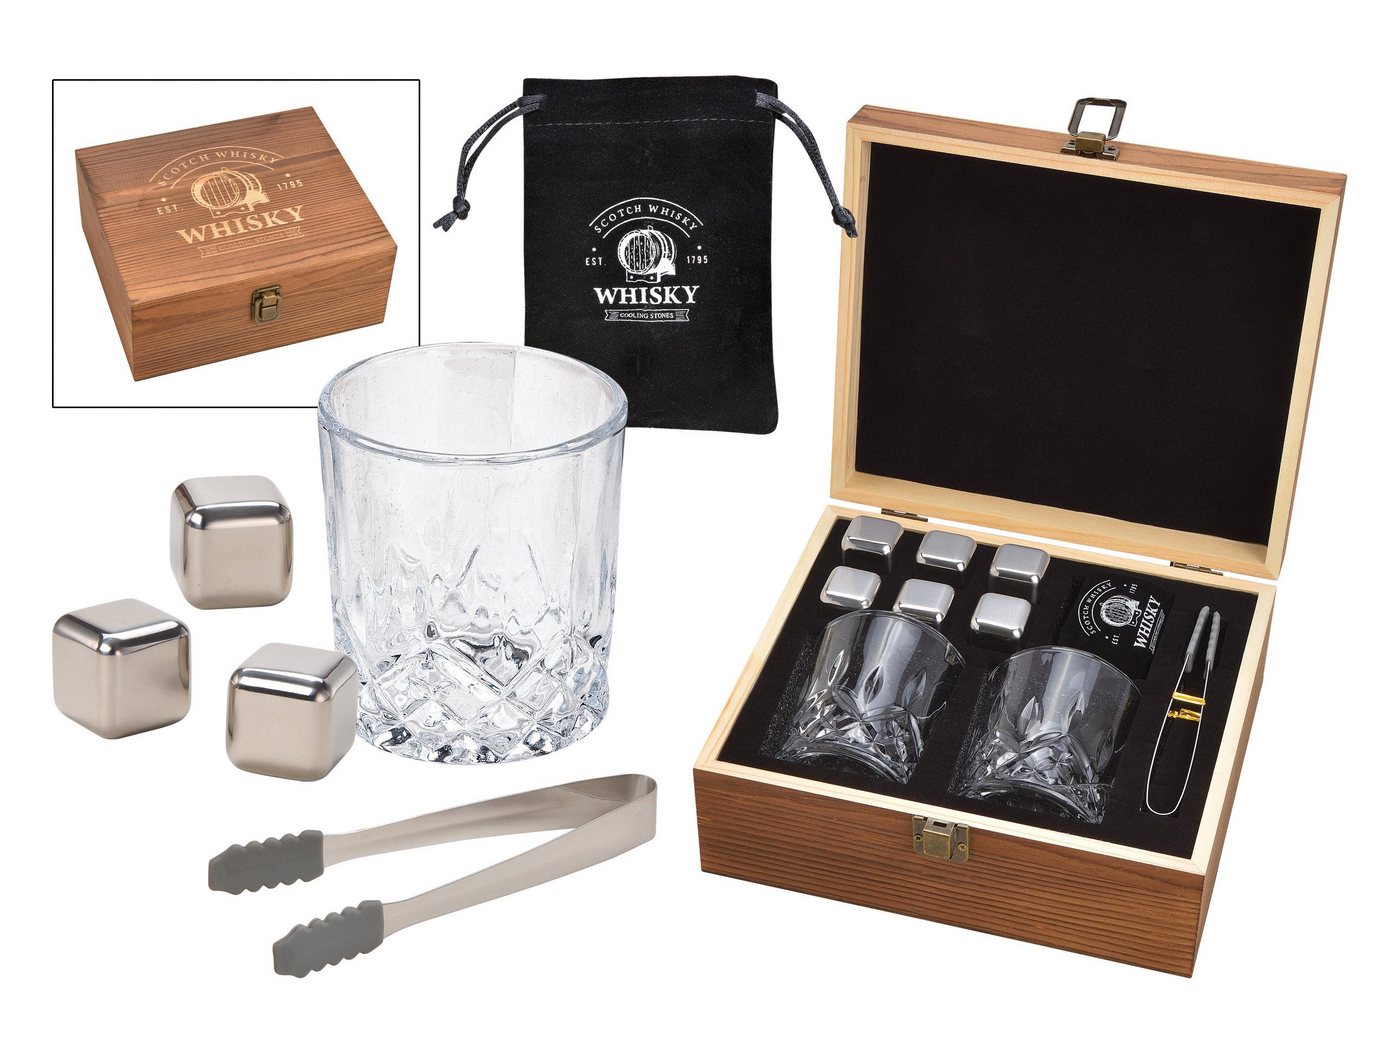 G.Wurm GmbH Gläser-Set Whisky Geschenk-Set mit 2 Gläsern, Edelstahl-Eiswürfeln, Zange von G.Wurm GmbH